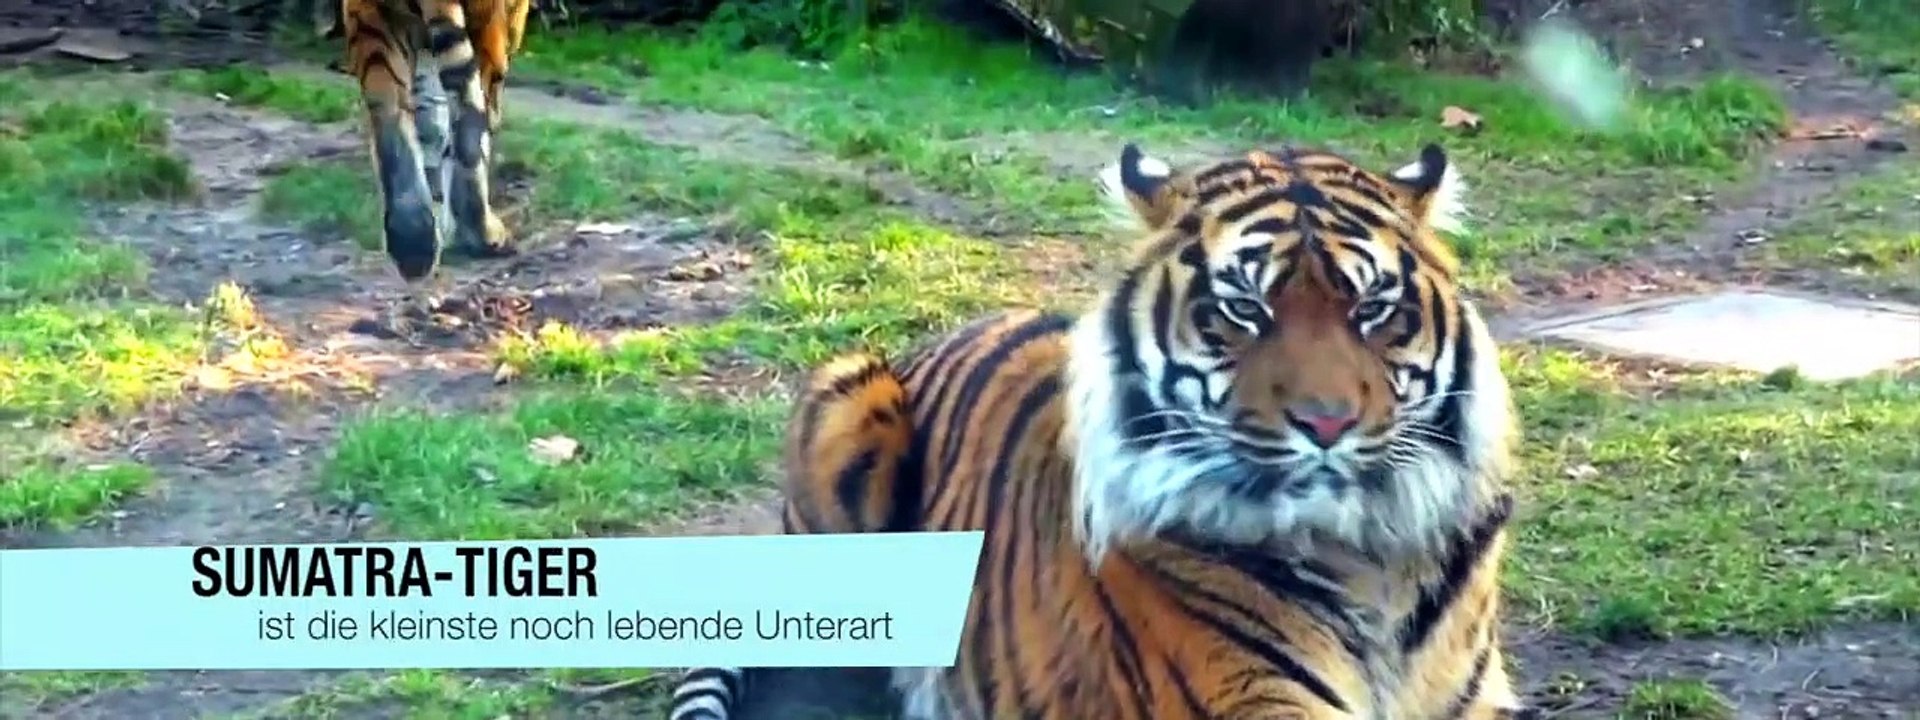 Die Kraft der Tiger - Beängstigende Tigerangriffe auf wilde Tiere   Tiger vs Mensch, Leopard,..